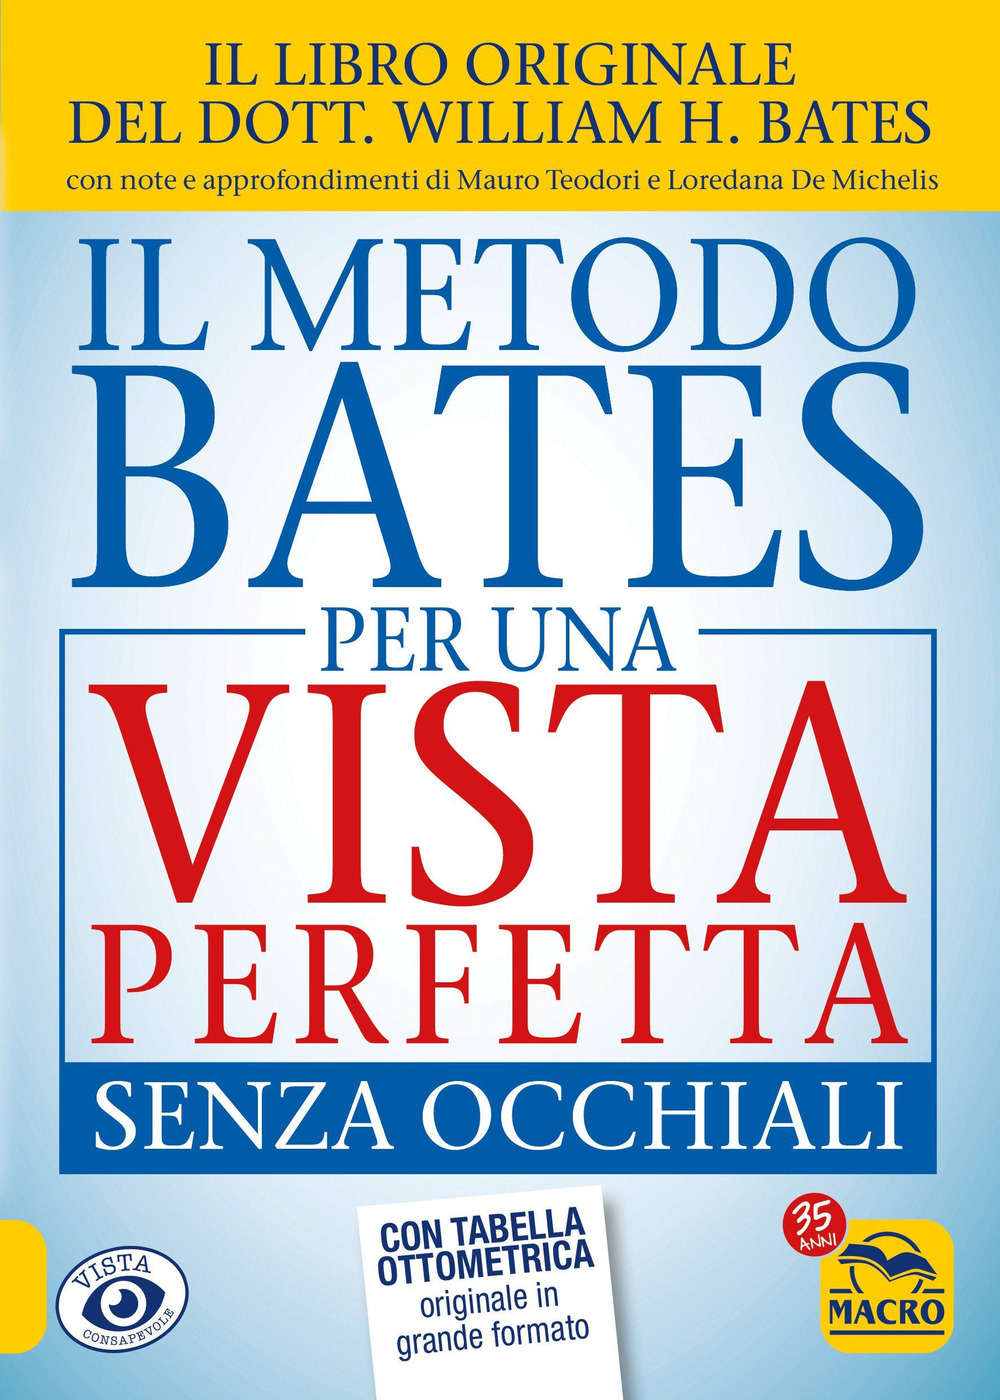 Libri Bates William Horatio - Il Metodo Bates Per Una Vista Perfetta Senza Occhiali NUOVO SIGILLATO, EDIZIONE DEL 28/02/2022 SUBITO DISPONIBILE